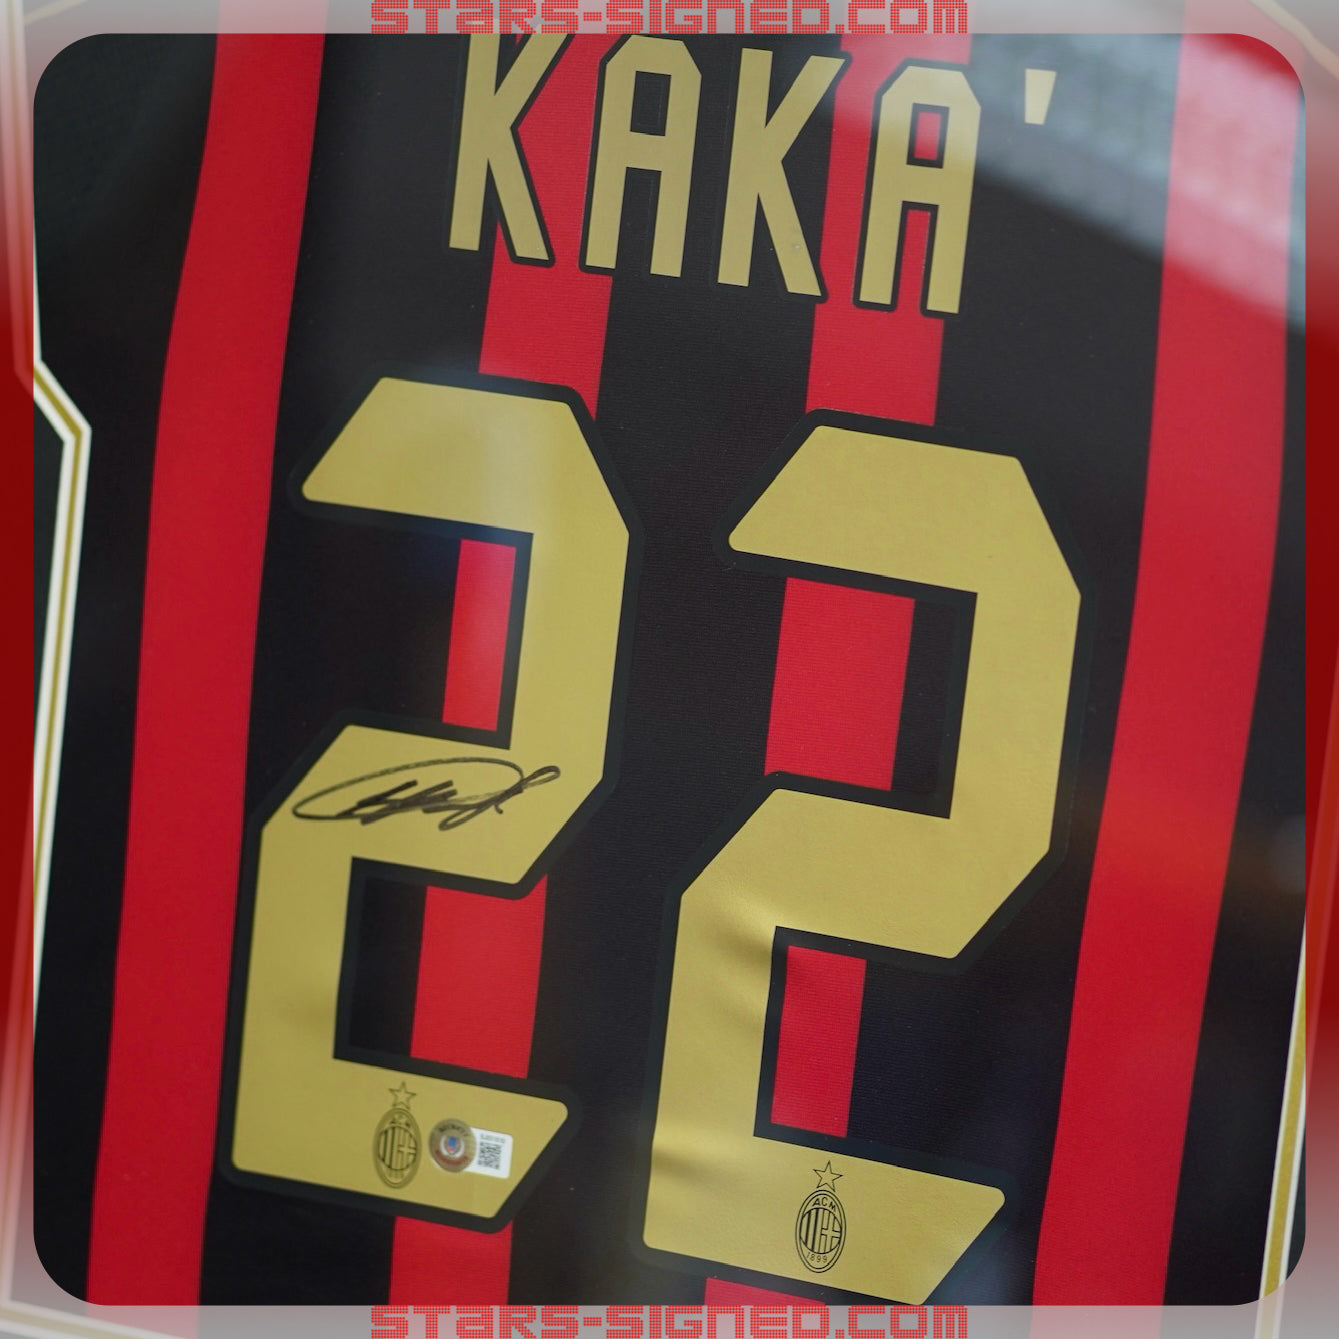 卡卡 Ricardo Kaká AC 米蘭主場球衣裱框(背簽)